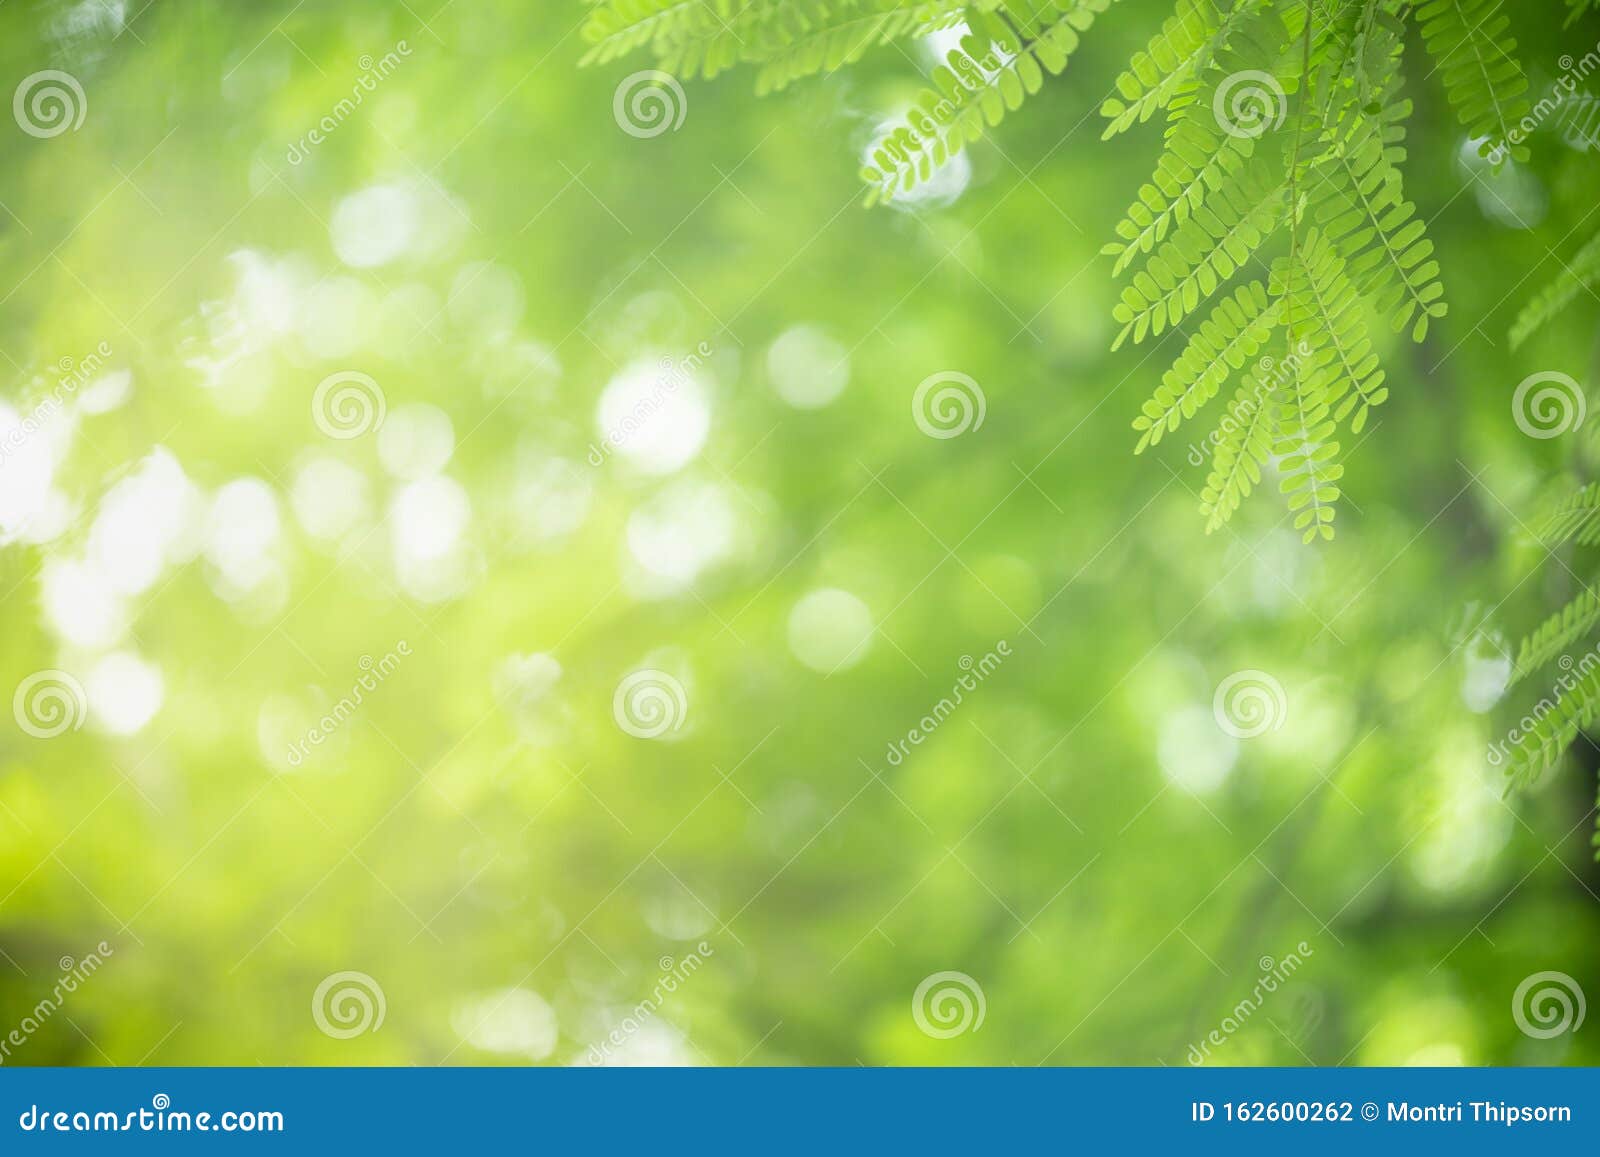 Lá xanh rực trên nền cỏ xanh là một cảnh tượng rất rực rỡ và đầy sức sống. Hãy cảm nhận vẻ đẹp hoàn hảo của cây xanh khi xem hình ảnh này. Bức tranh gợi nhớ đến những chiều đầu mùa thu và những cánh đồng xanh tươi!